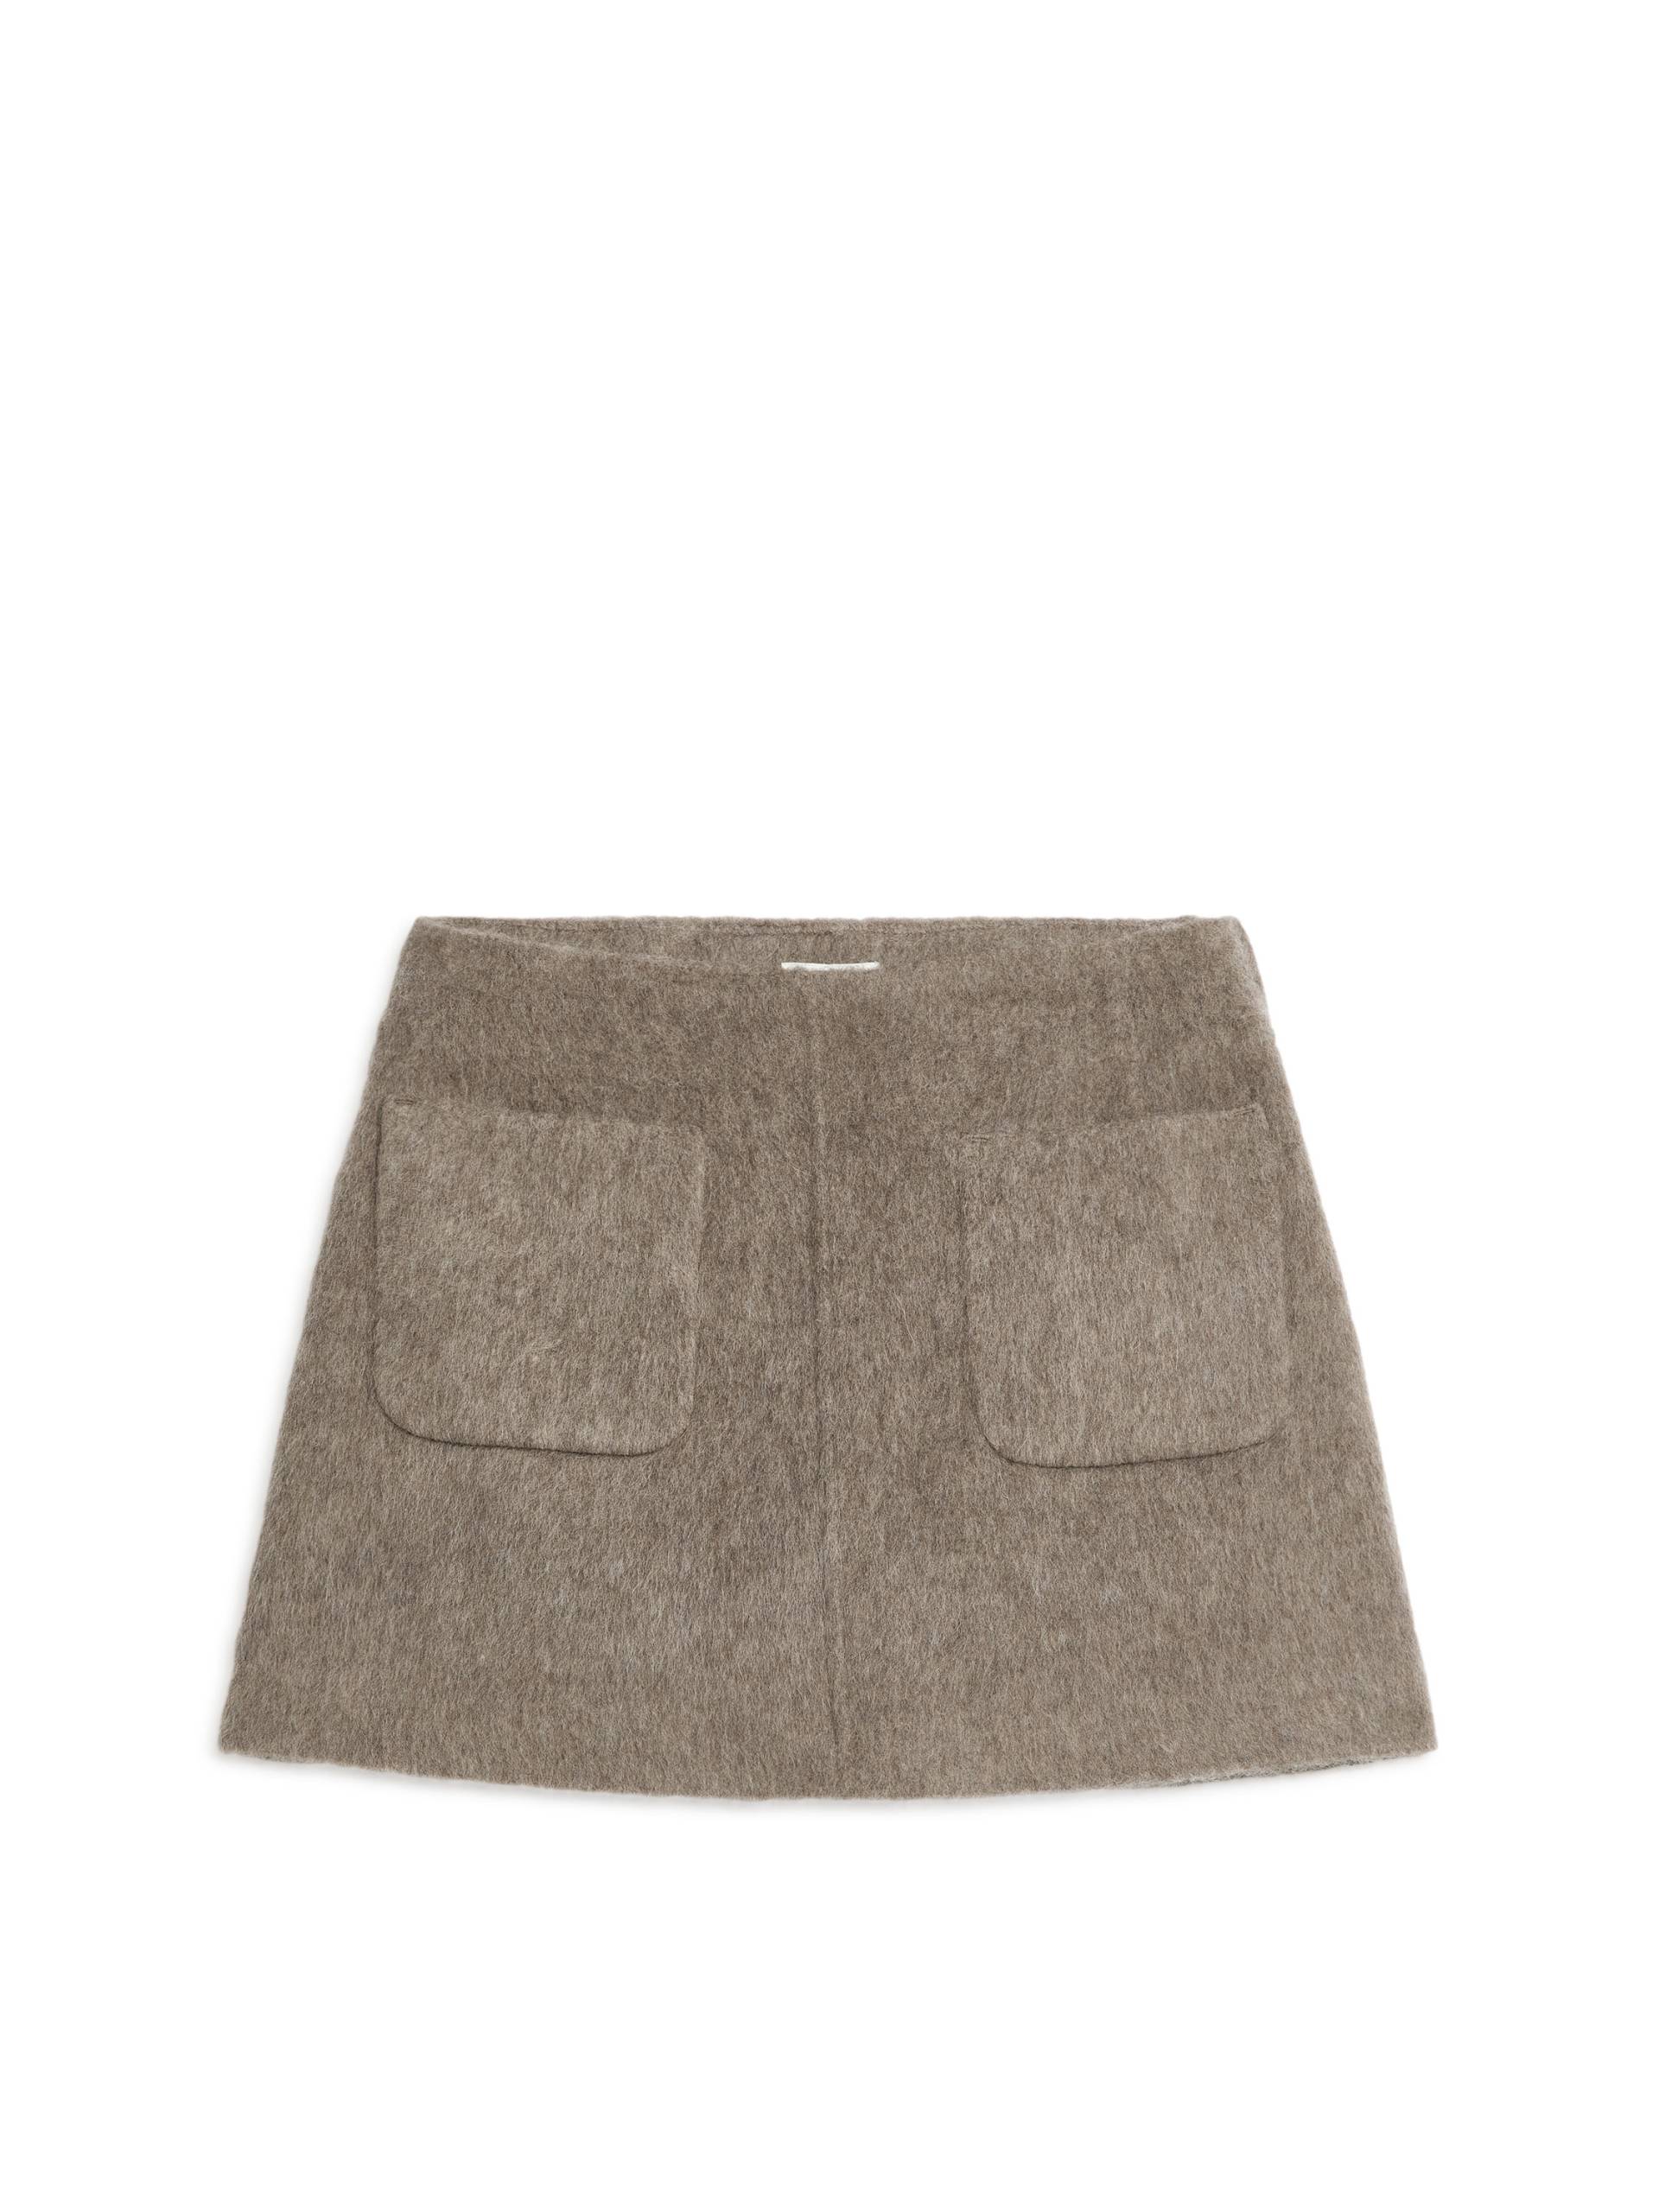 Arket Minirock aus Wolle Taupe, Röcke in Größe 40. Farbe: Mole von Arket